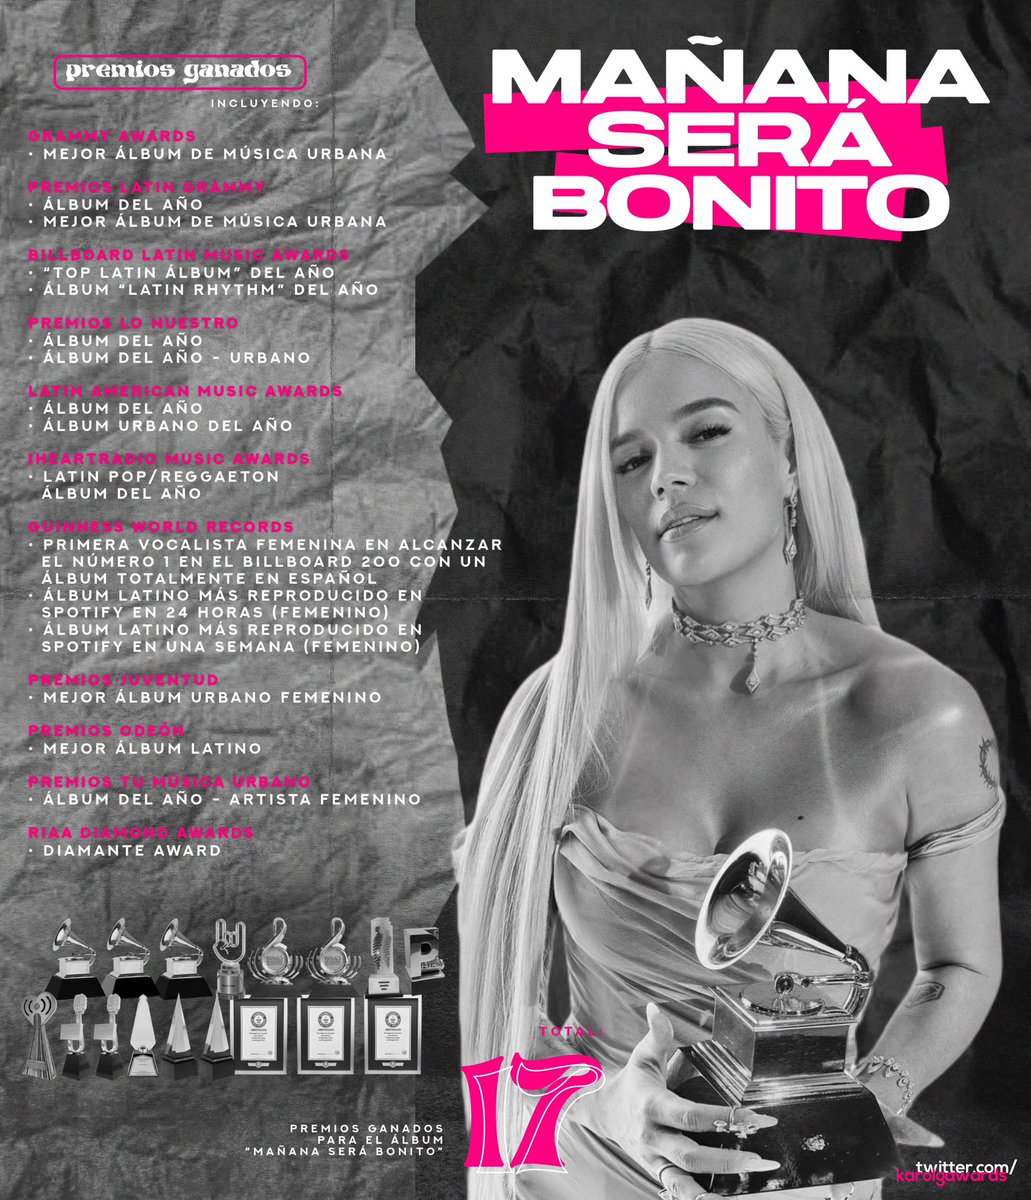 El álbum “MAÑANA SERÁ BONITO”, acumula un total de 17 premios ganados hasta el momento, incluyendo un premio Grammy (@RecordingAcad) y ‘Álbum del Año’ en los @LatinGRAMMYs.

— Lista de todos sus premios ganados: